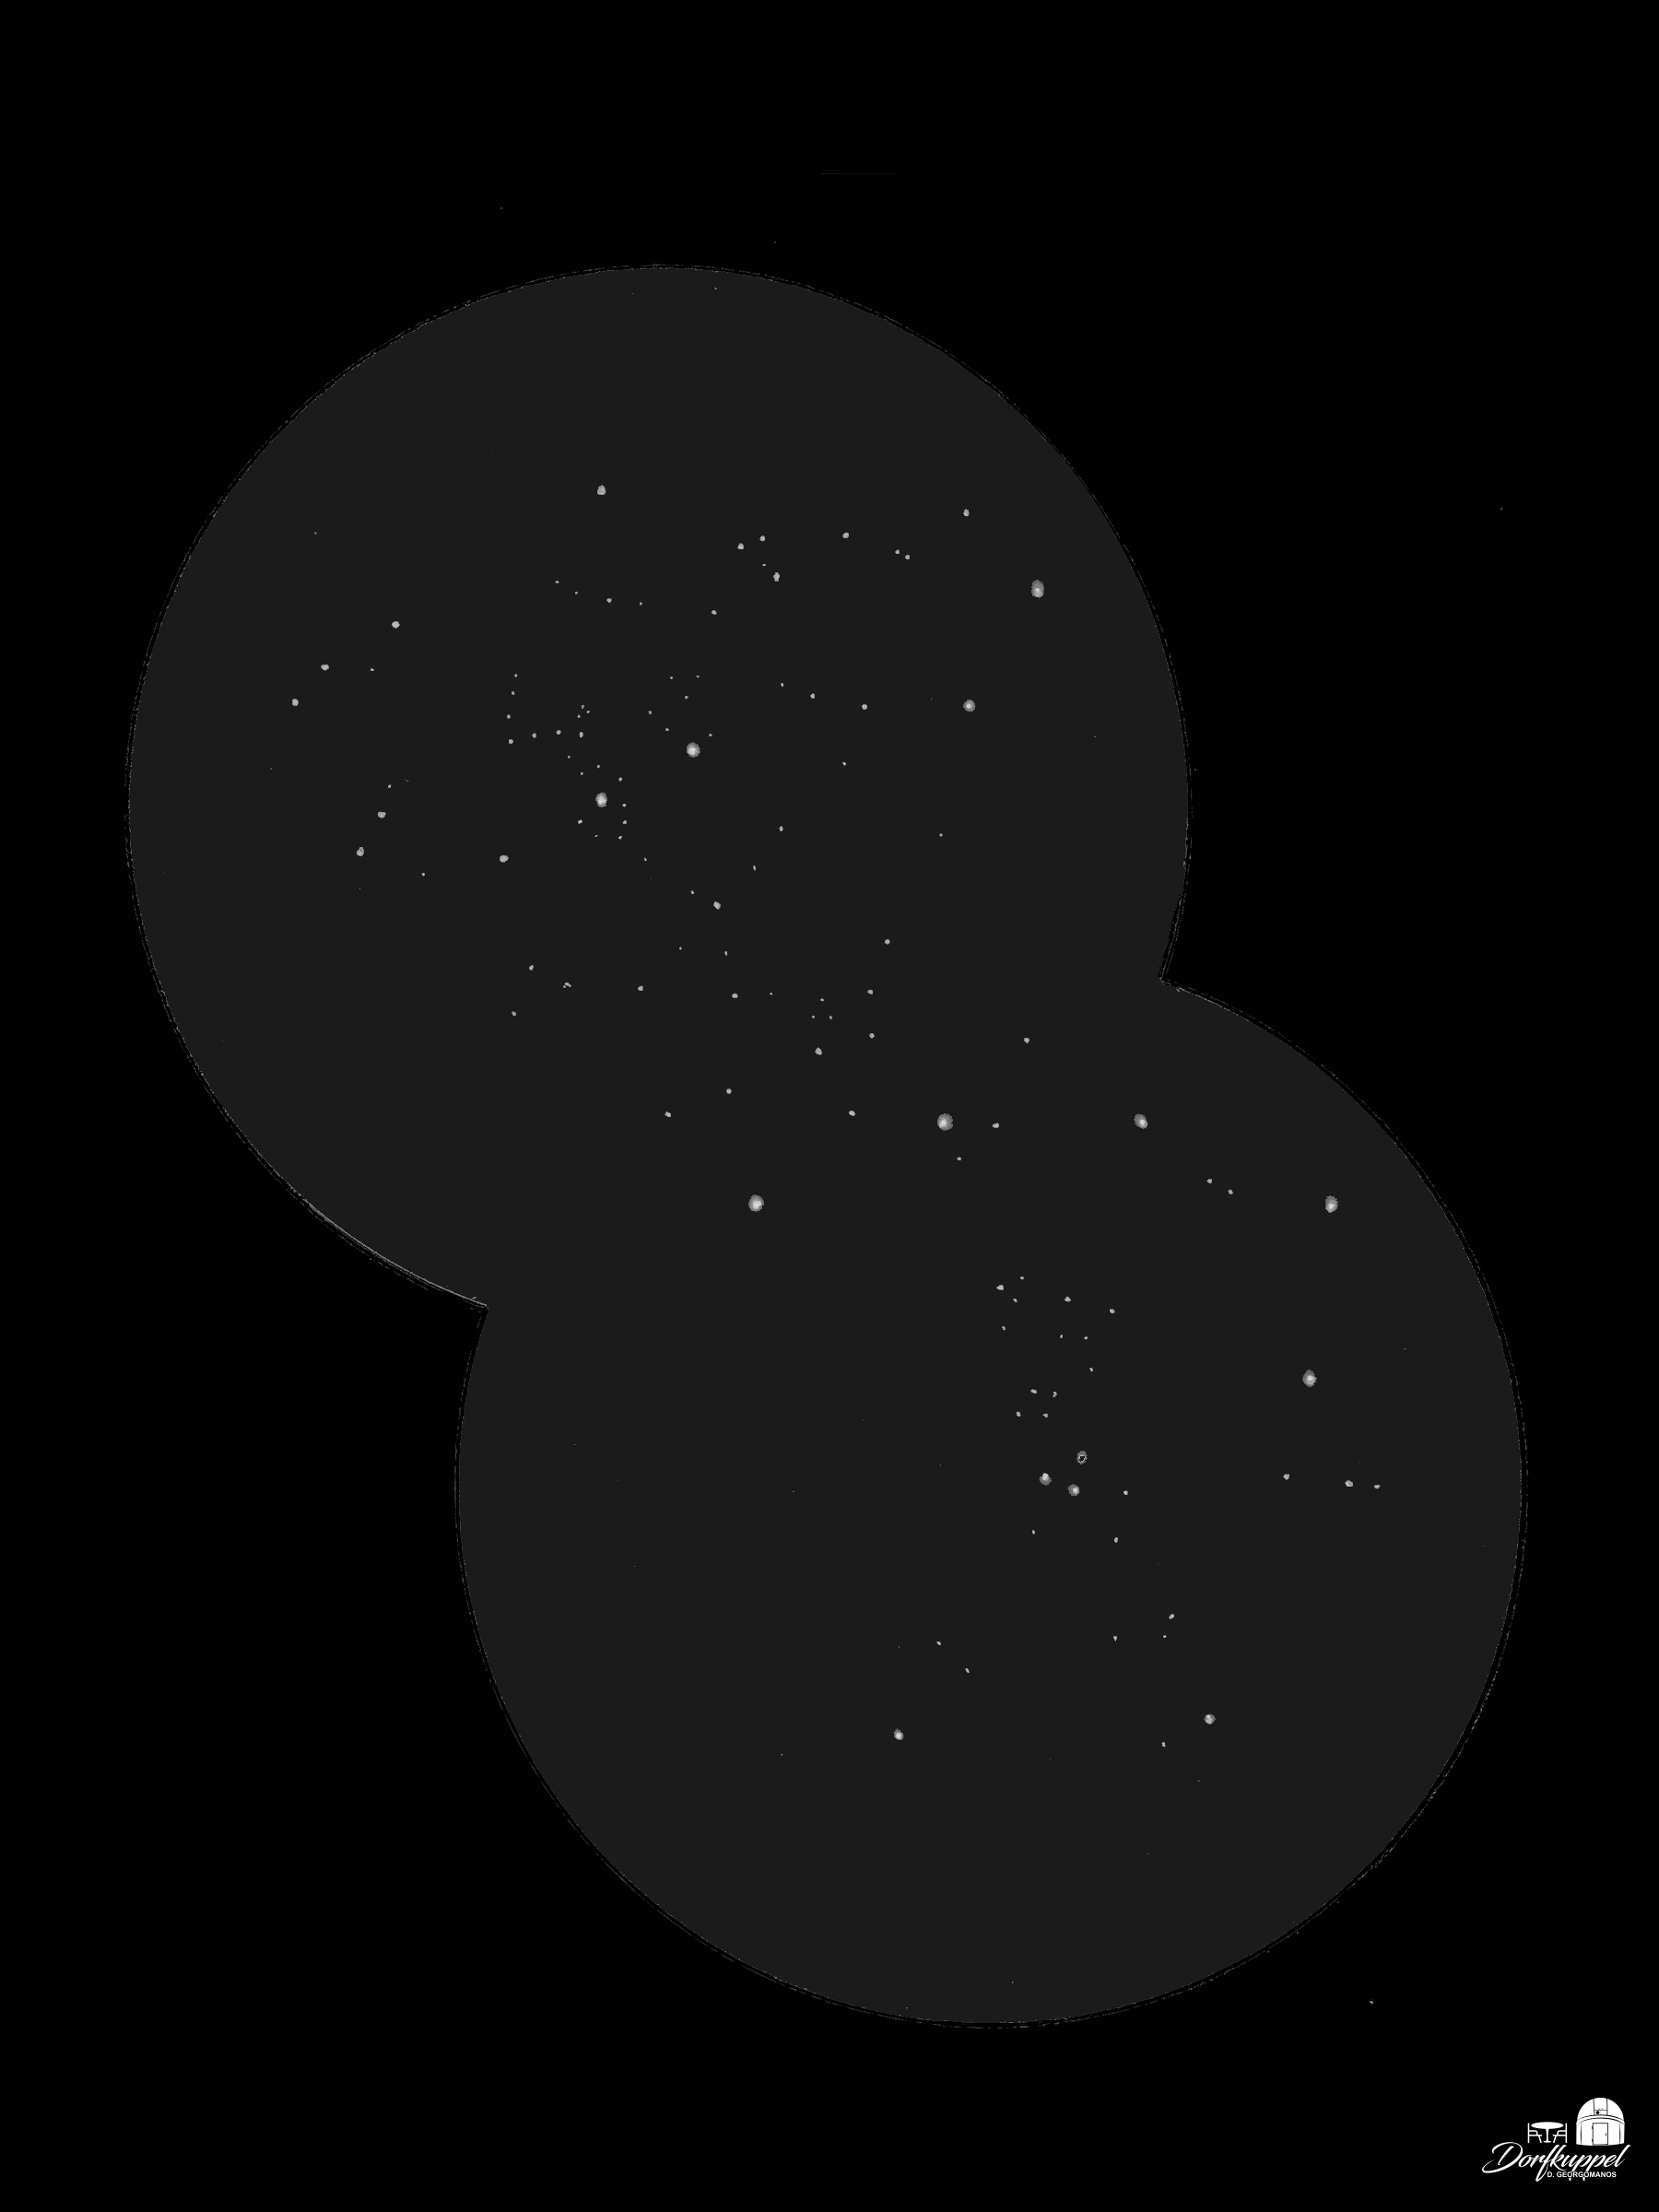 NGC 869/884 vom 02.11.2021 (Zeichnung)